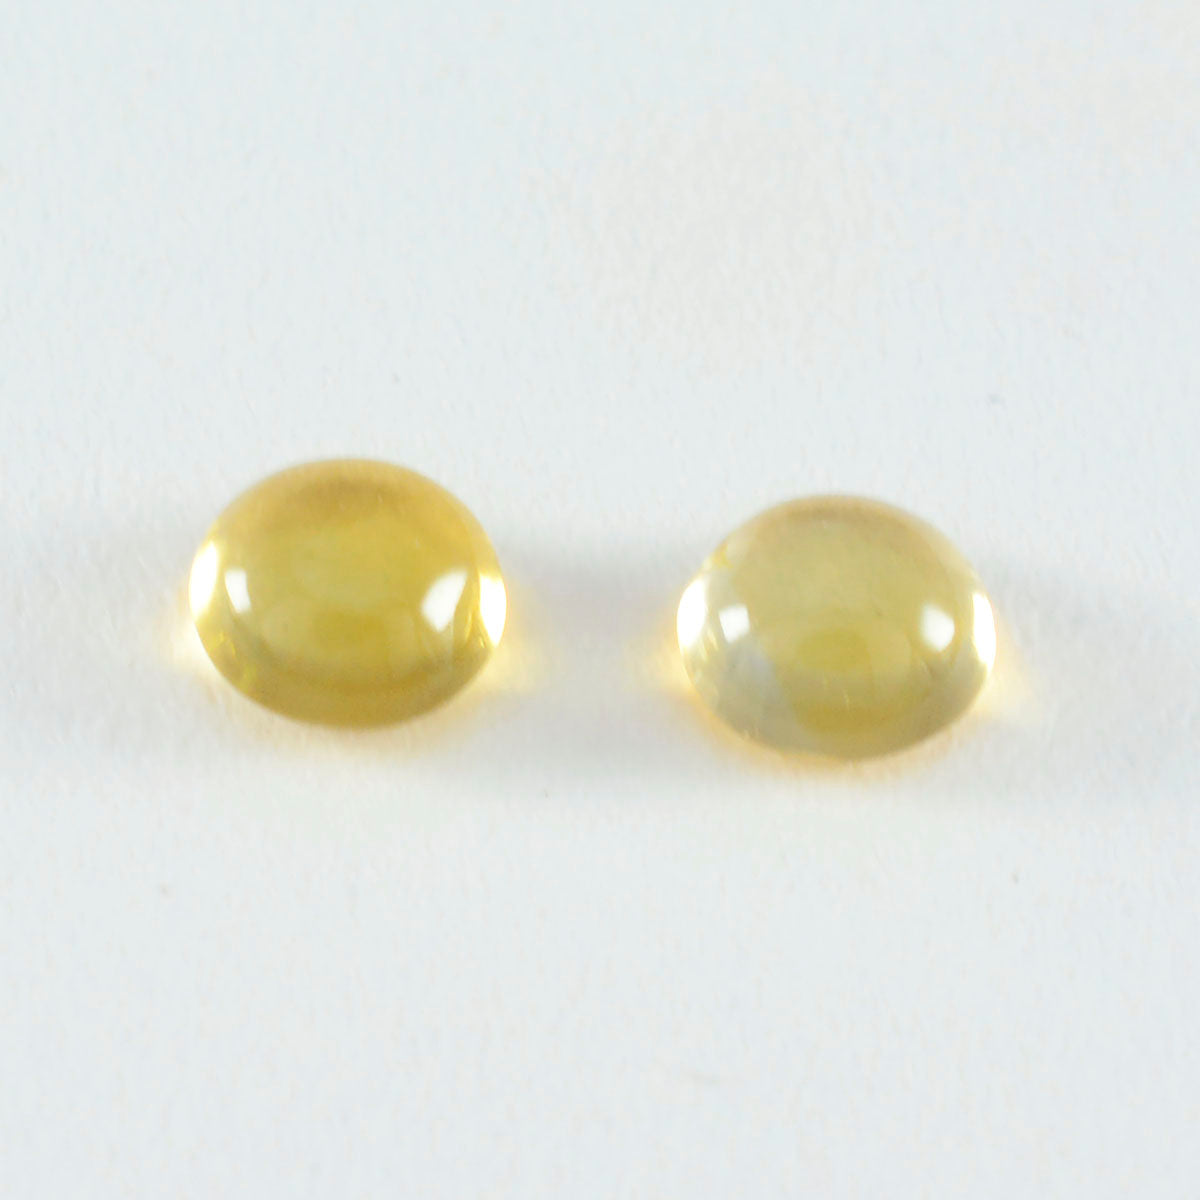 Riyogems 1 cabujón de citrino amarillo de 14x14 mm, forma redonda, piedra de calidad